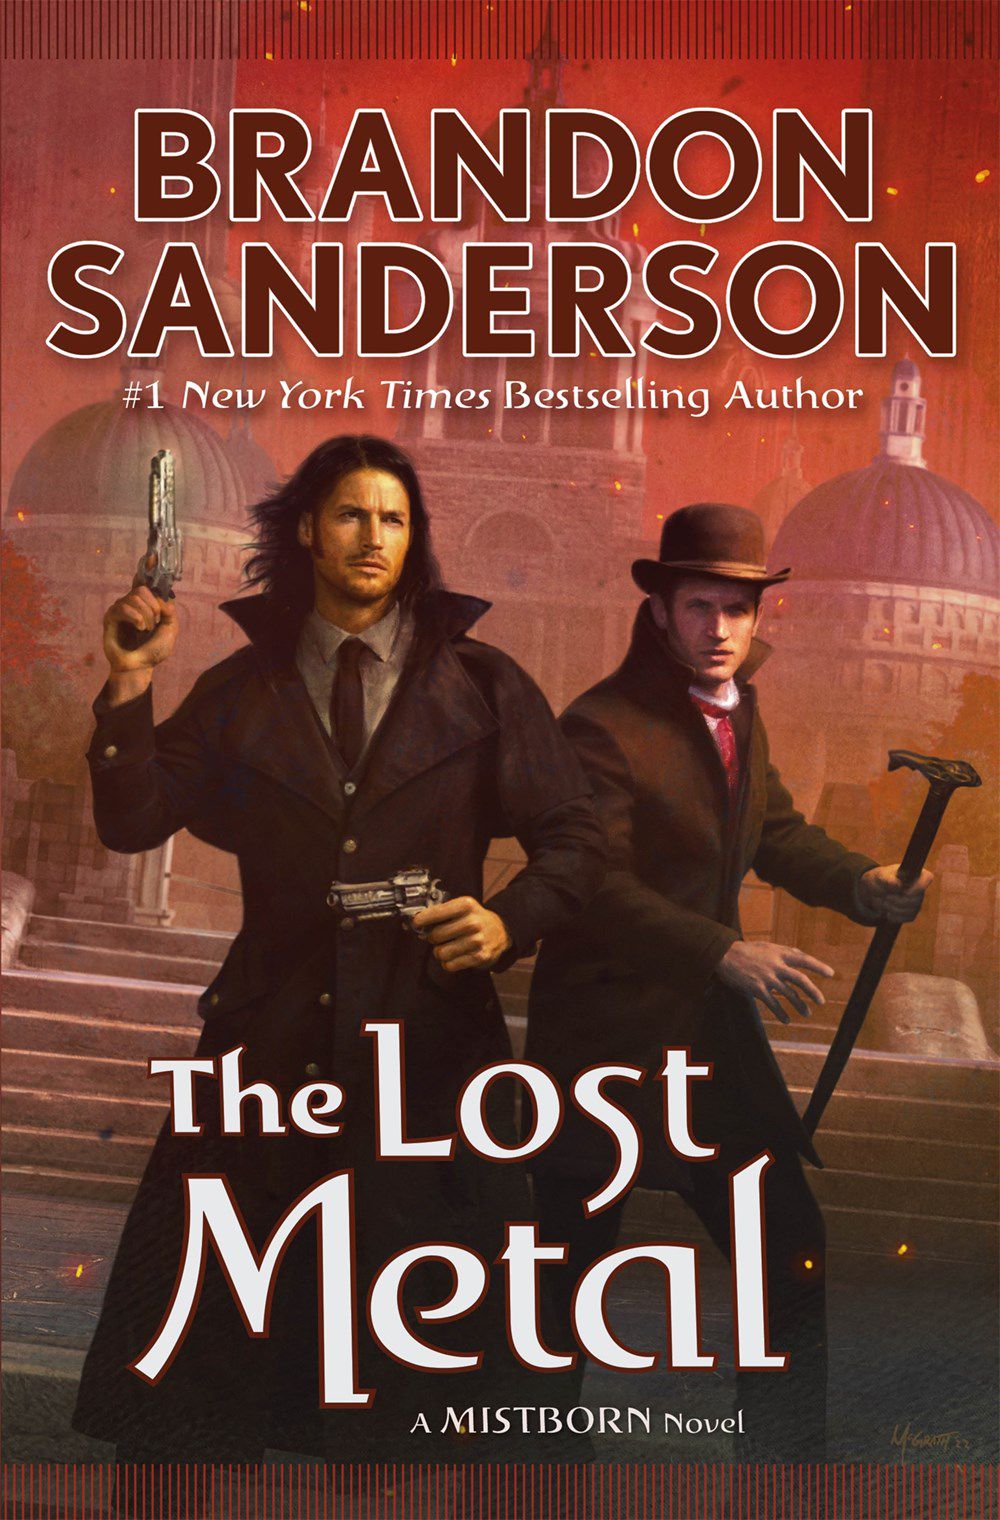 La copertina di The Lost Metal di Brandon Sanderson, con due personaggi: uno con pistole a doppia saldatura, l'altro con cappello e bastone.